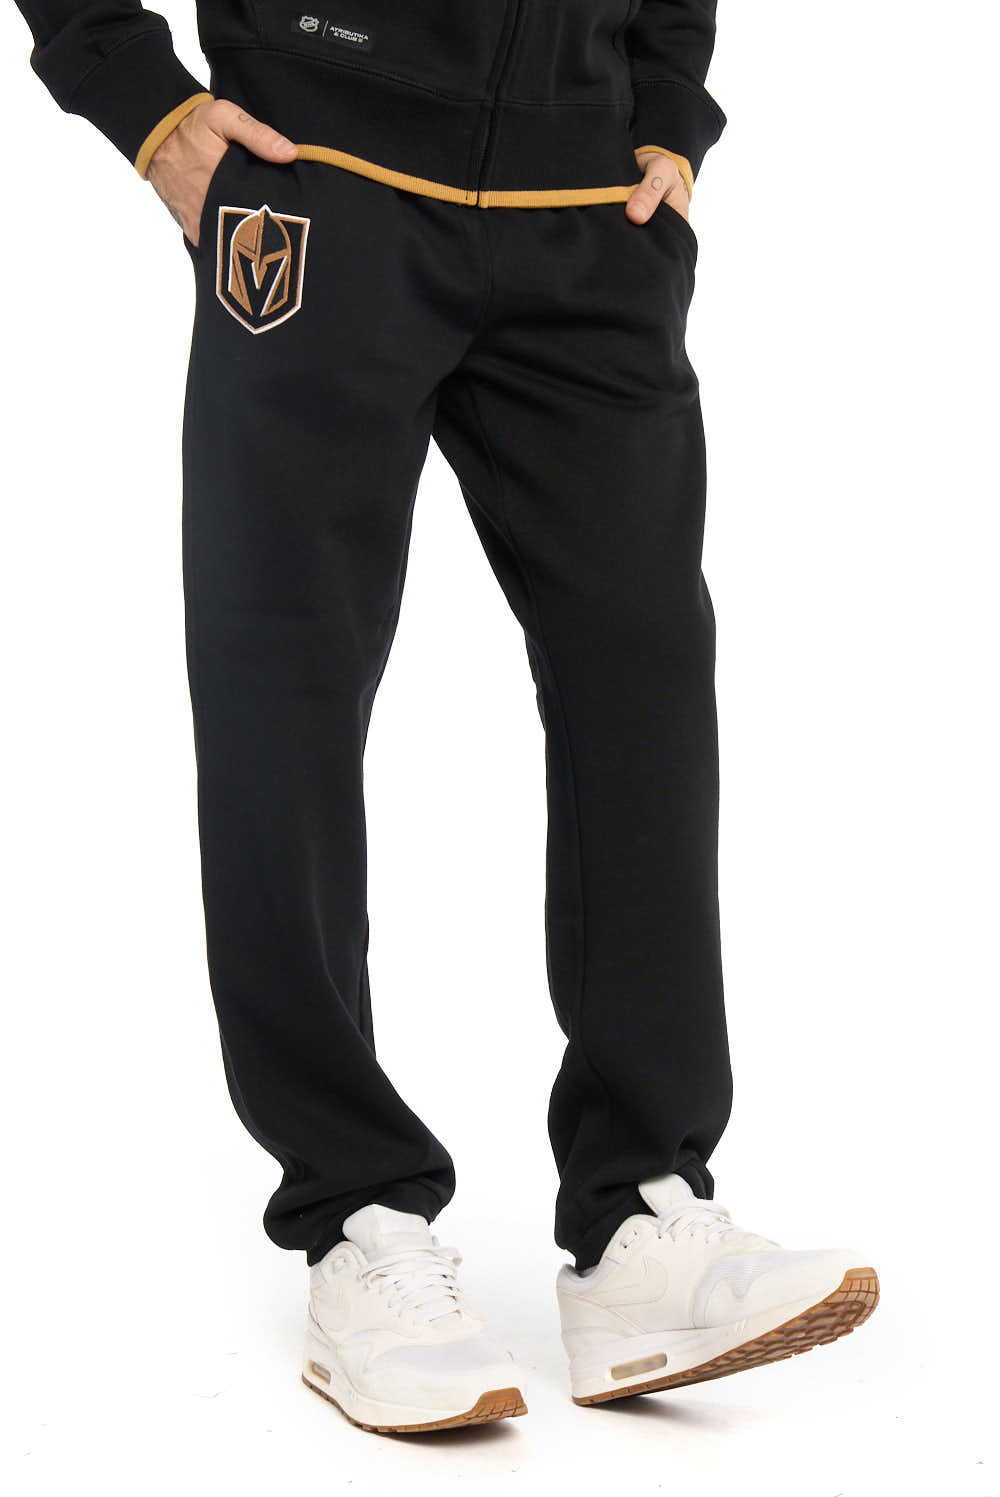 Спортивные брюки мужские Atributika&Club Вегас Голден Найтс 46350 черные 3XL